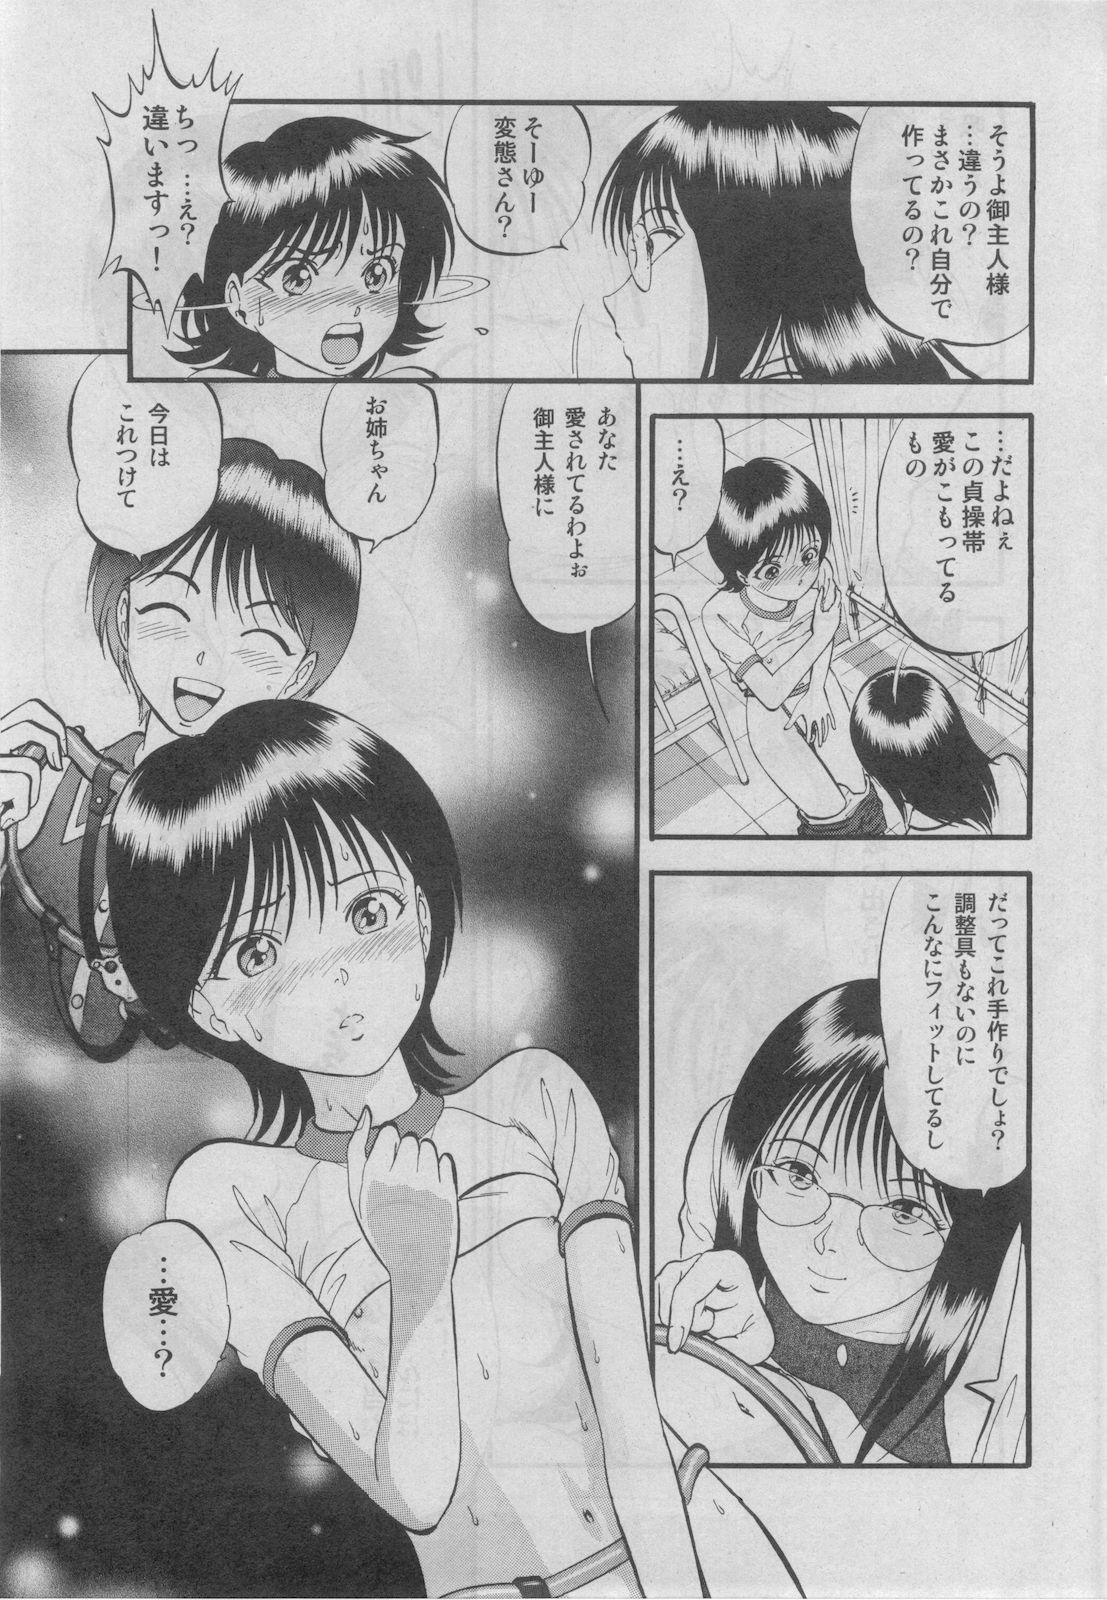 プチマガジン コミックモエマックスJr. Vol.3 2010年04月号